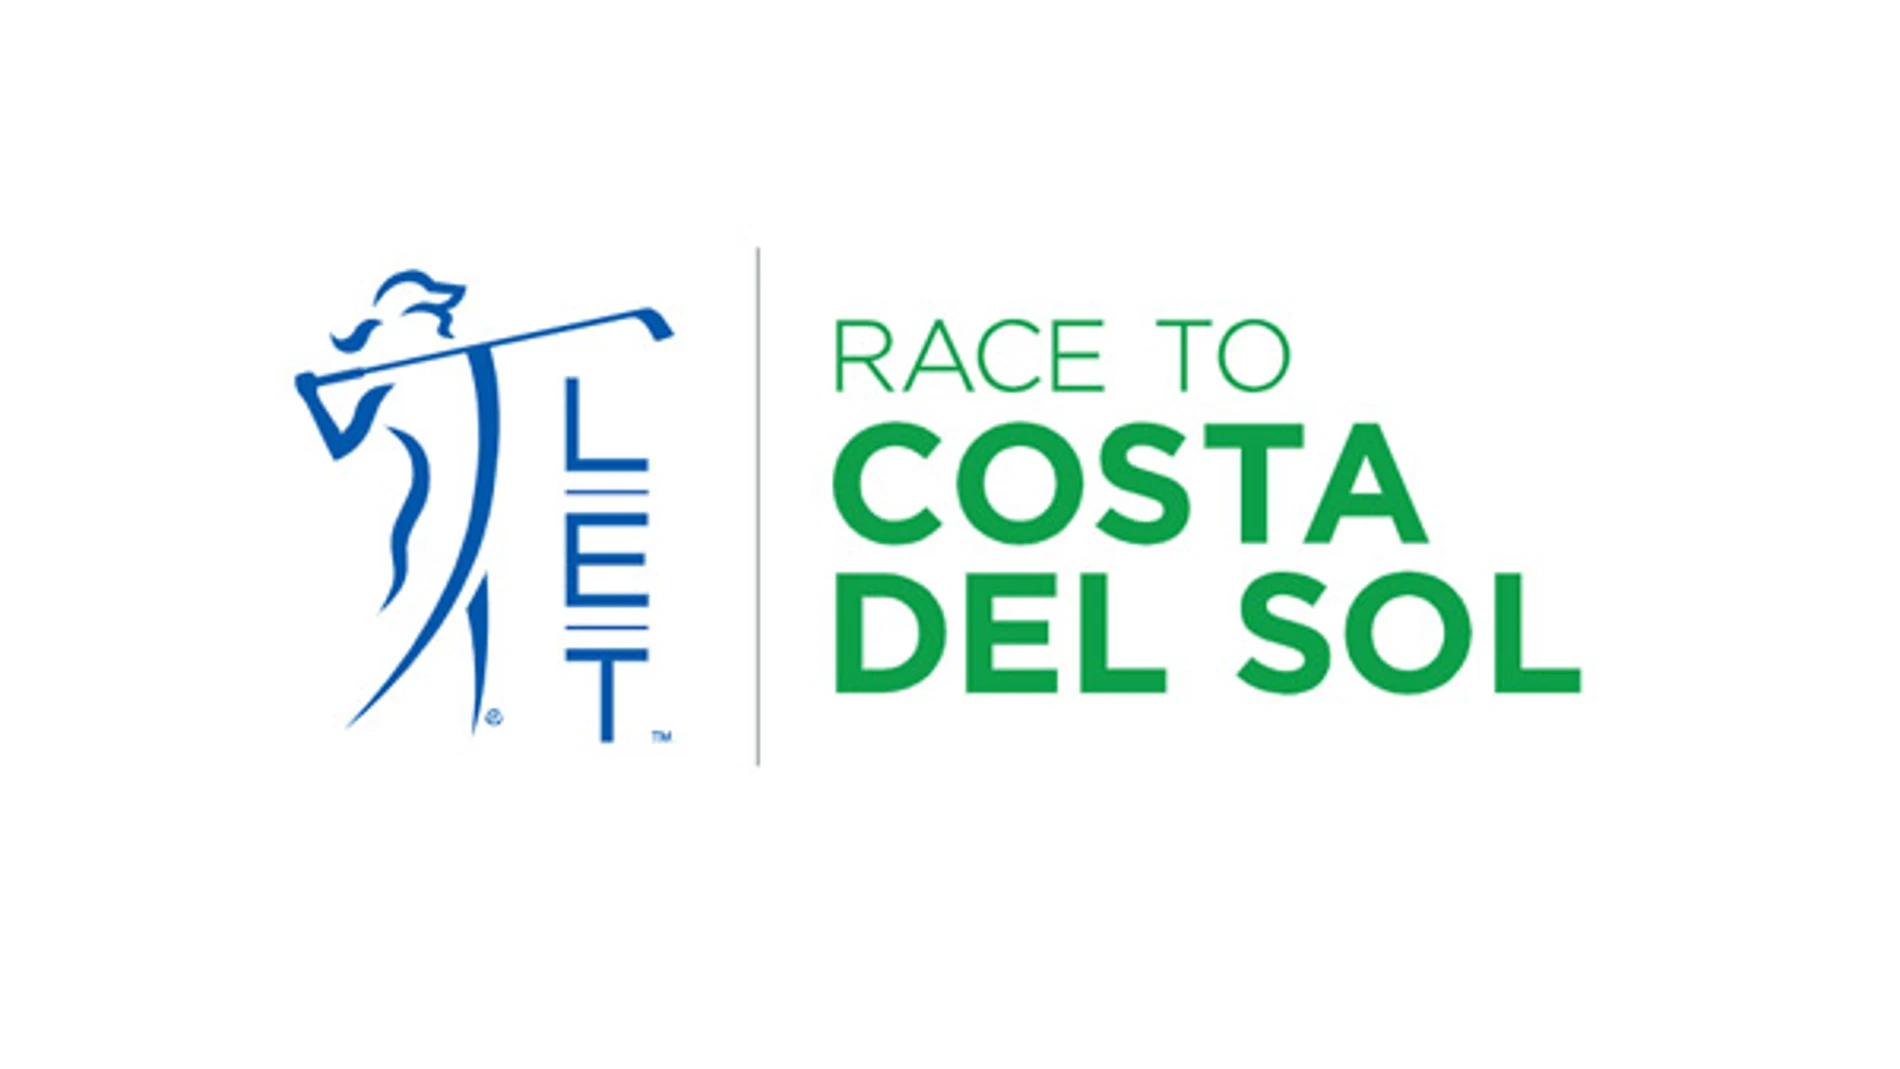 Nuevo logo Race to Costa del Sol